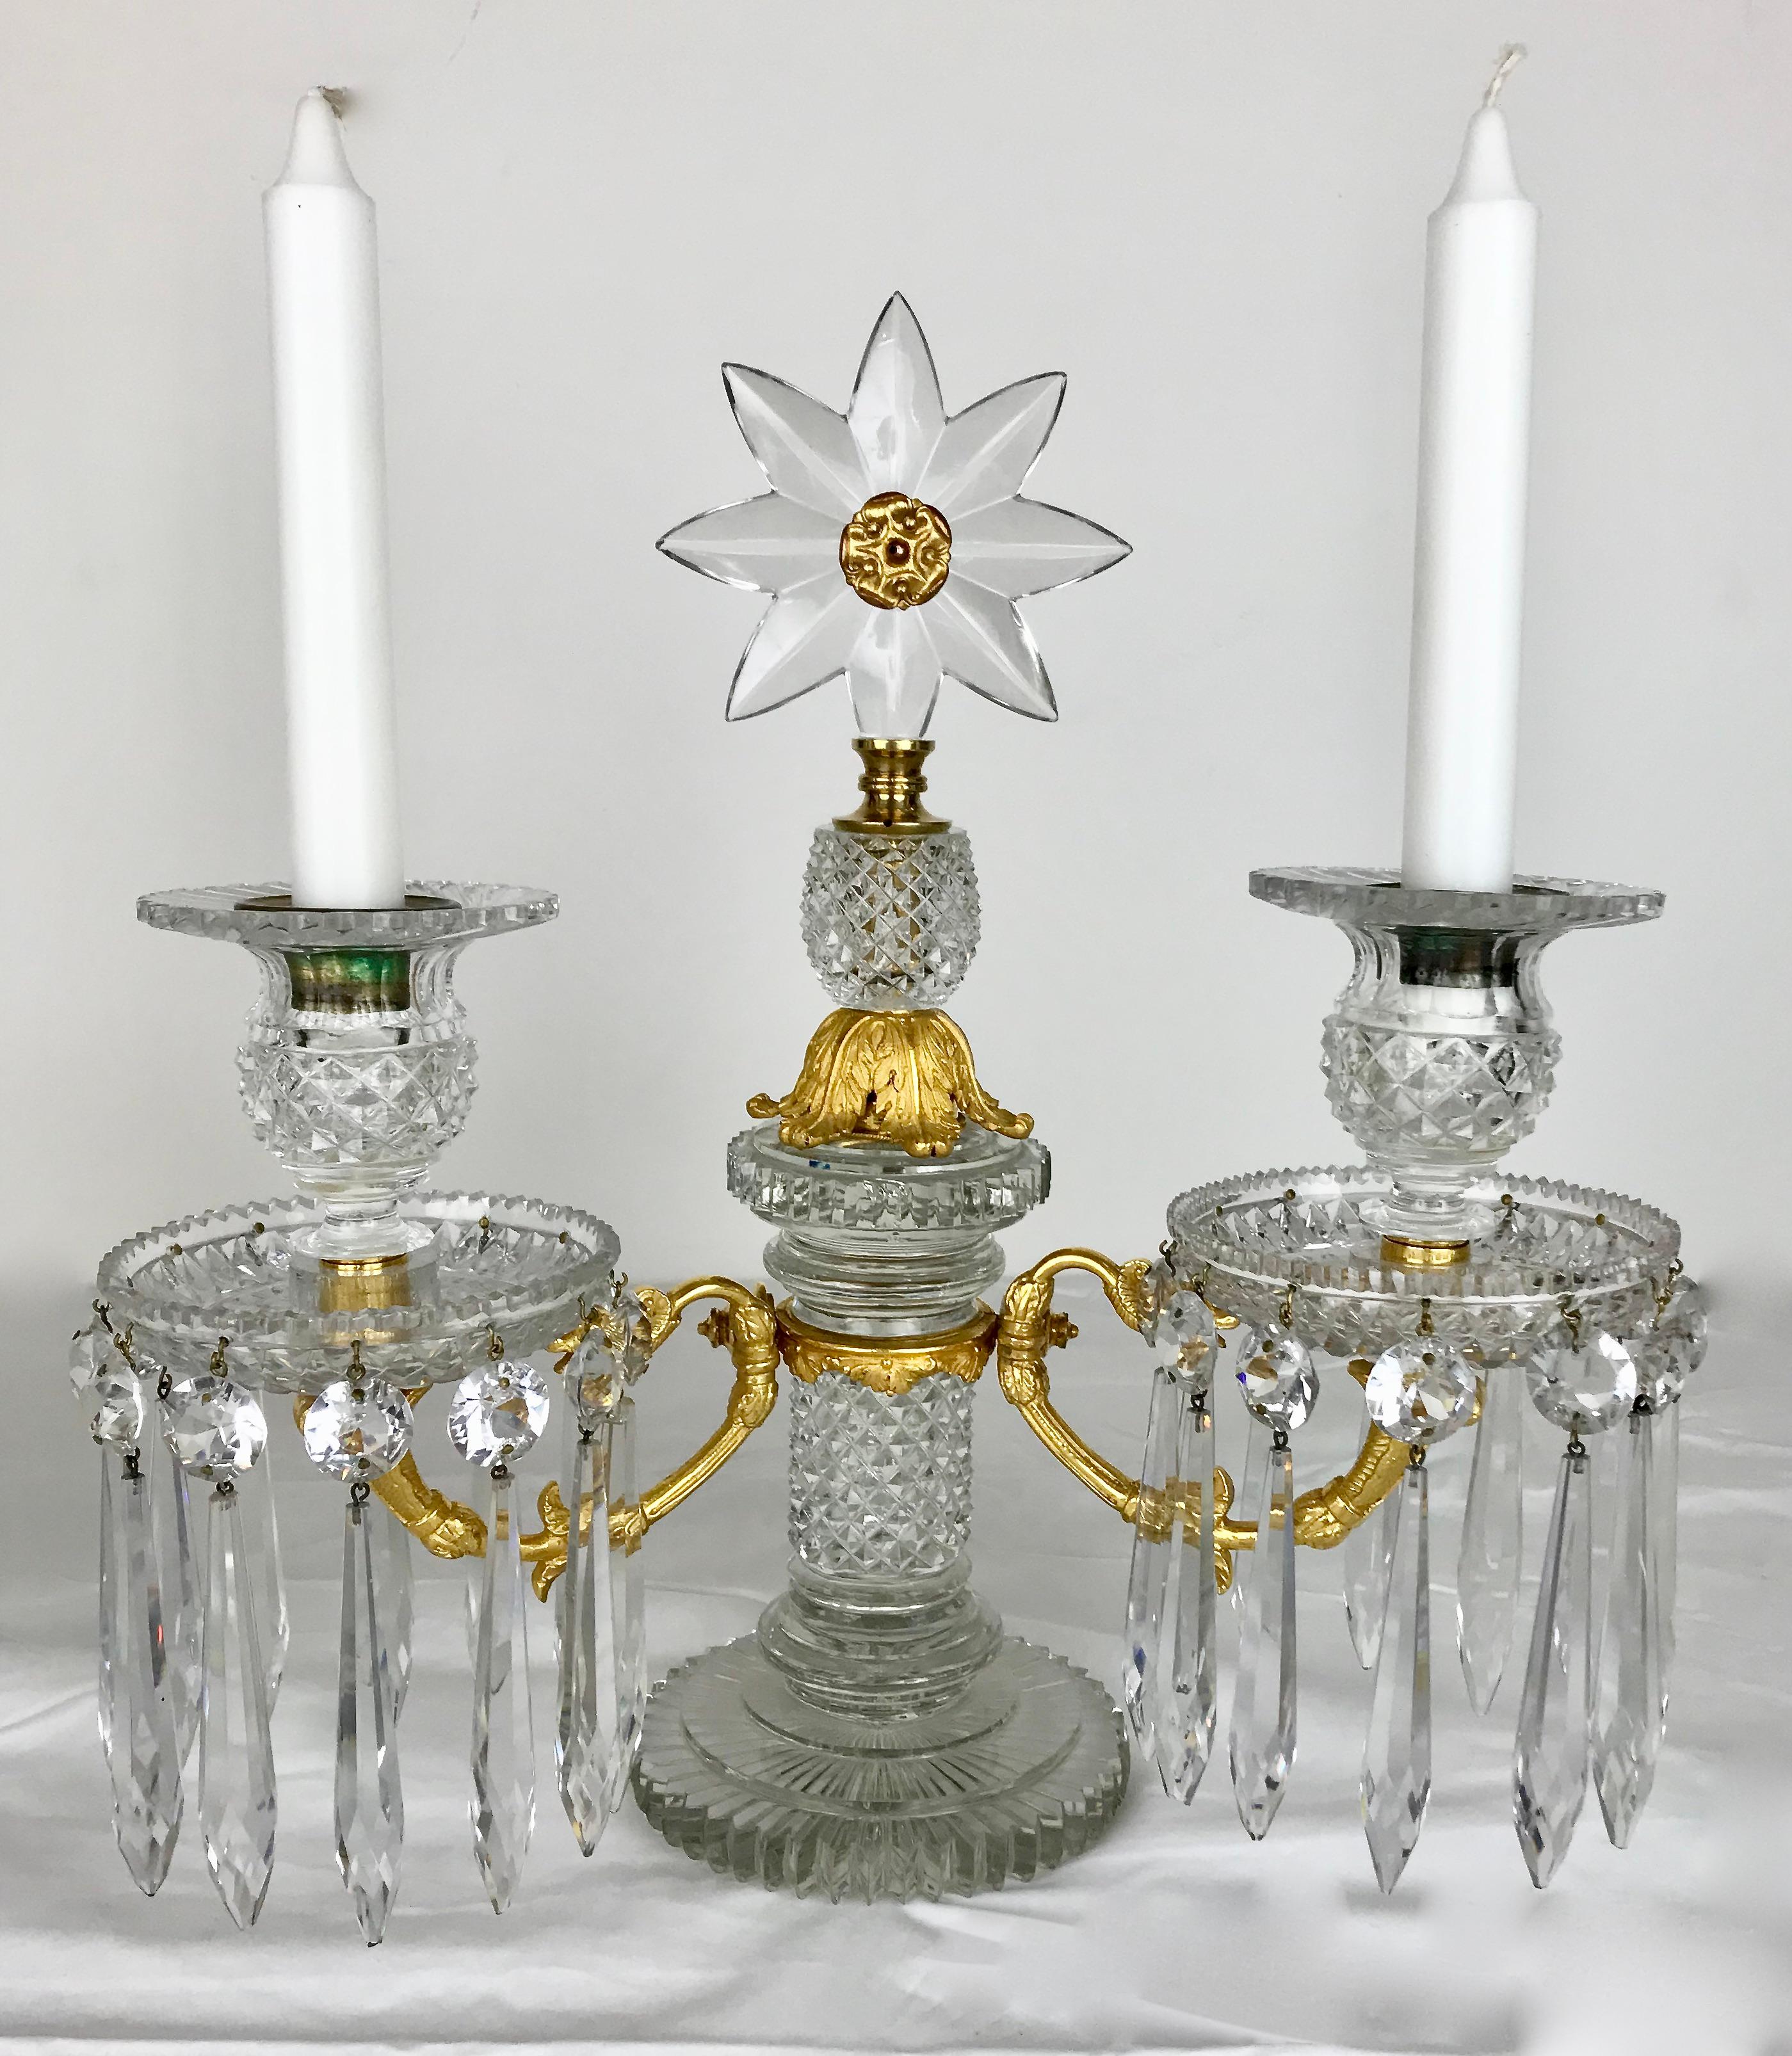 Cette exquise paire de candélabres Regency à deux lumières est attribuée au célèbre fabricant Apsley Pellatt. Les bases circulaires à gradins avec des colonnes taillées en diamant soutiennent des bras jumeaux en bronze doré. Les fleurons en forme